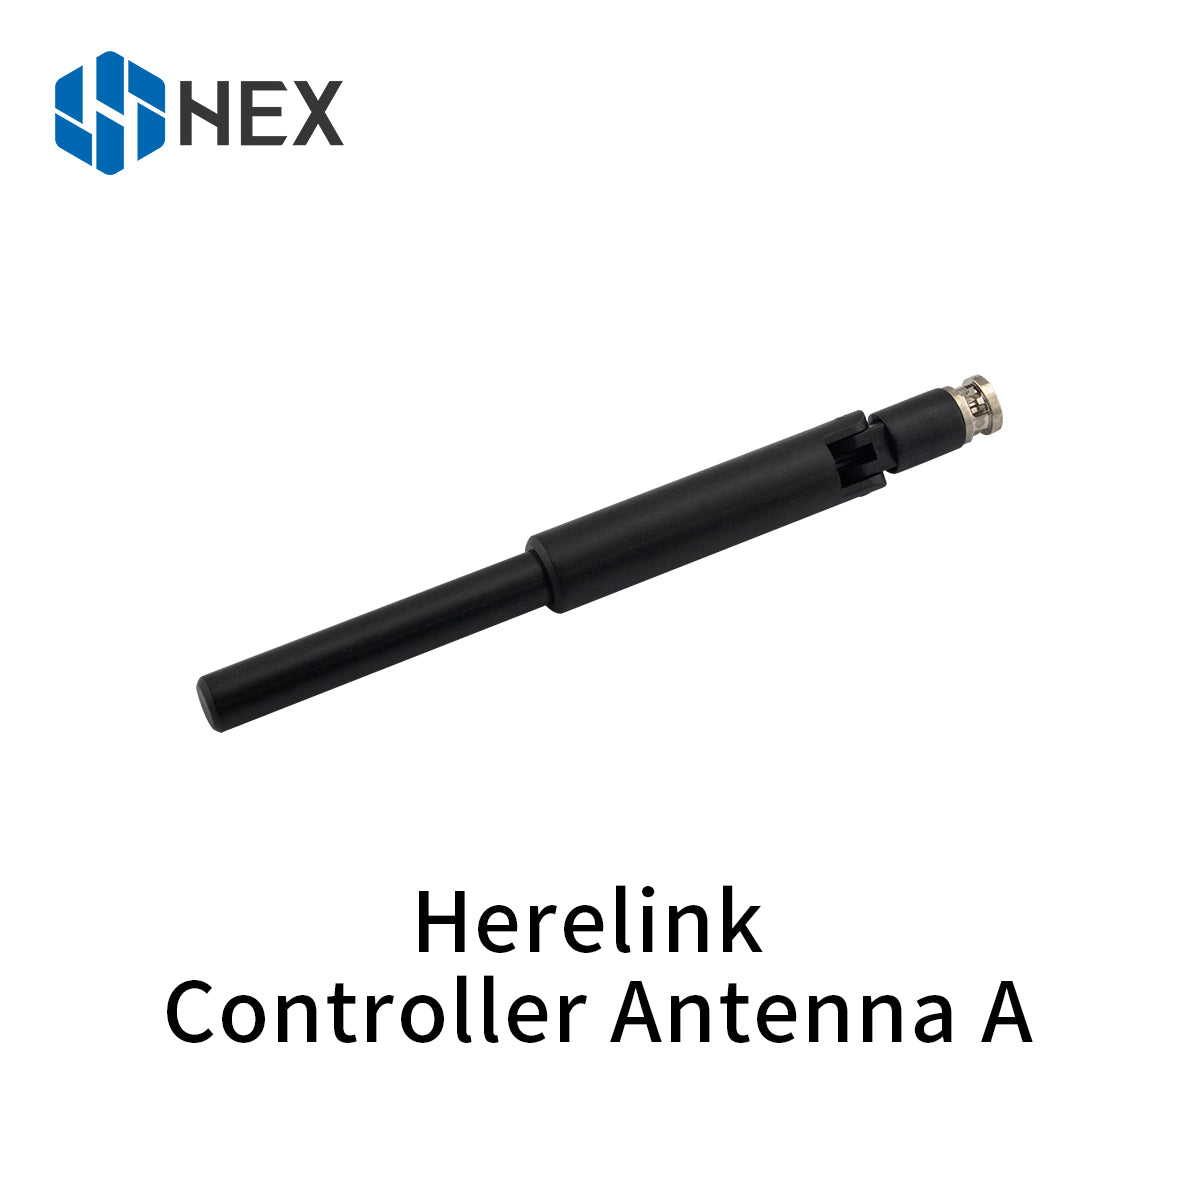 Herelink HD Video Transmission System (new v1.1)